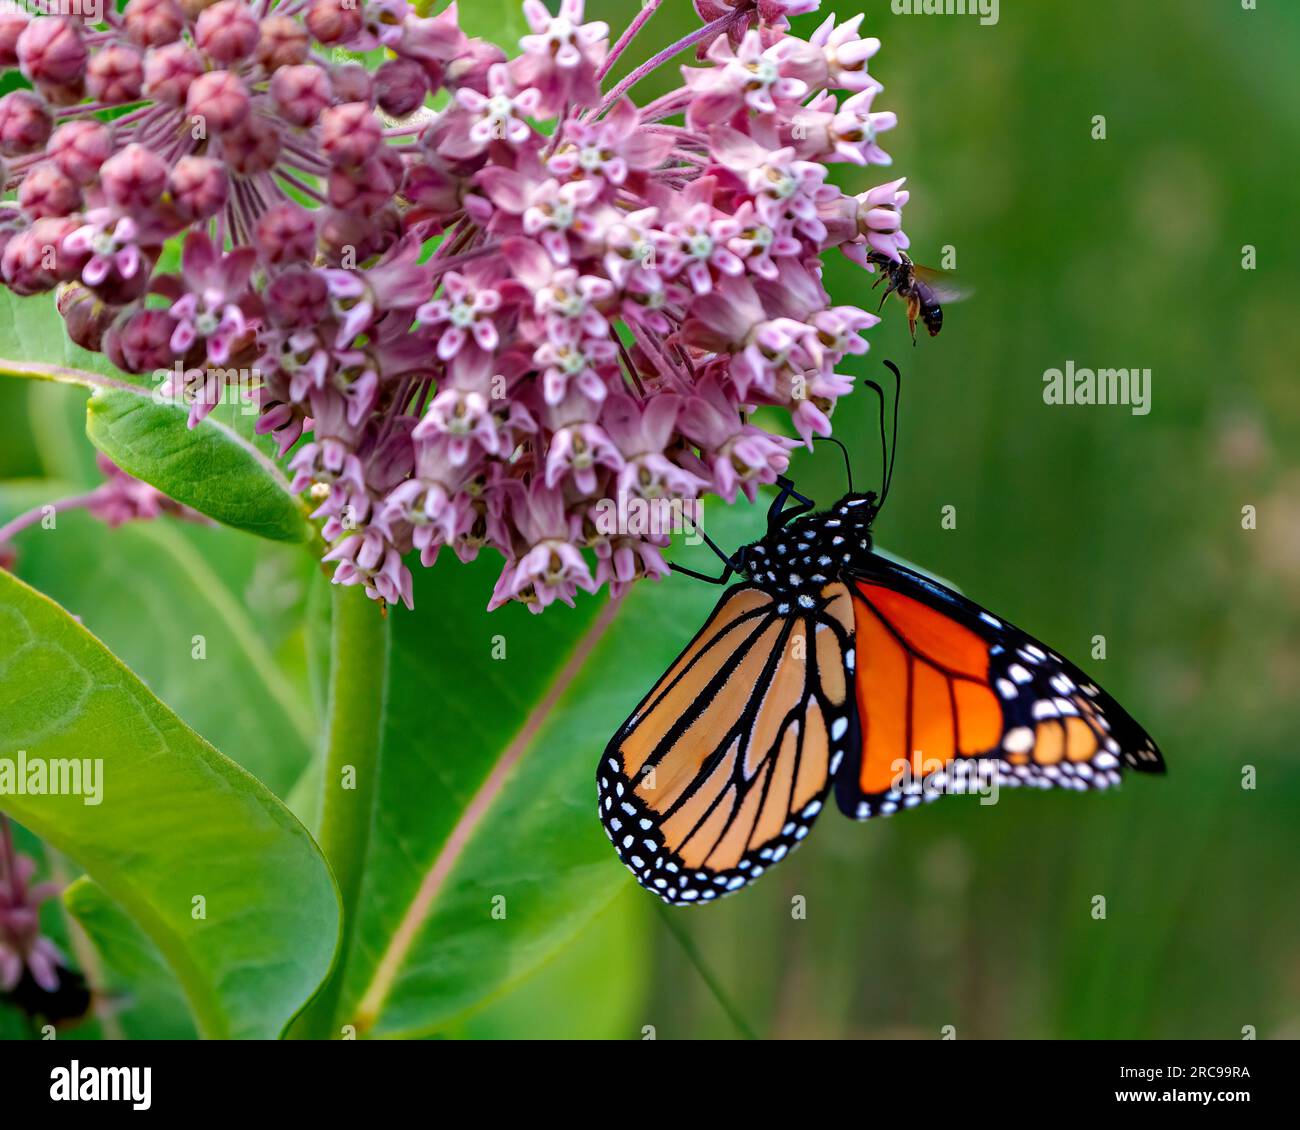 Vista lateral de la mariposa monarca bebiendo o bebiendo néctar de una planta de algodoncillo con un fondo verde en su entorno y hábitat. Foto de stock